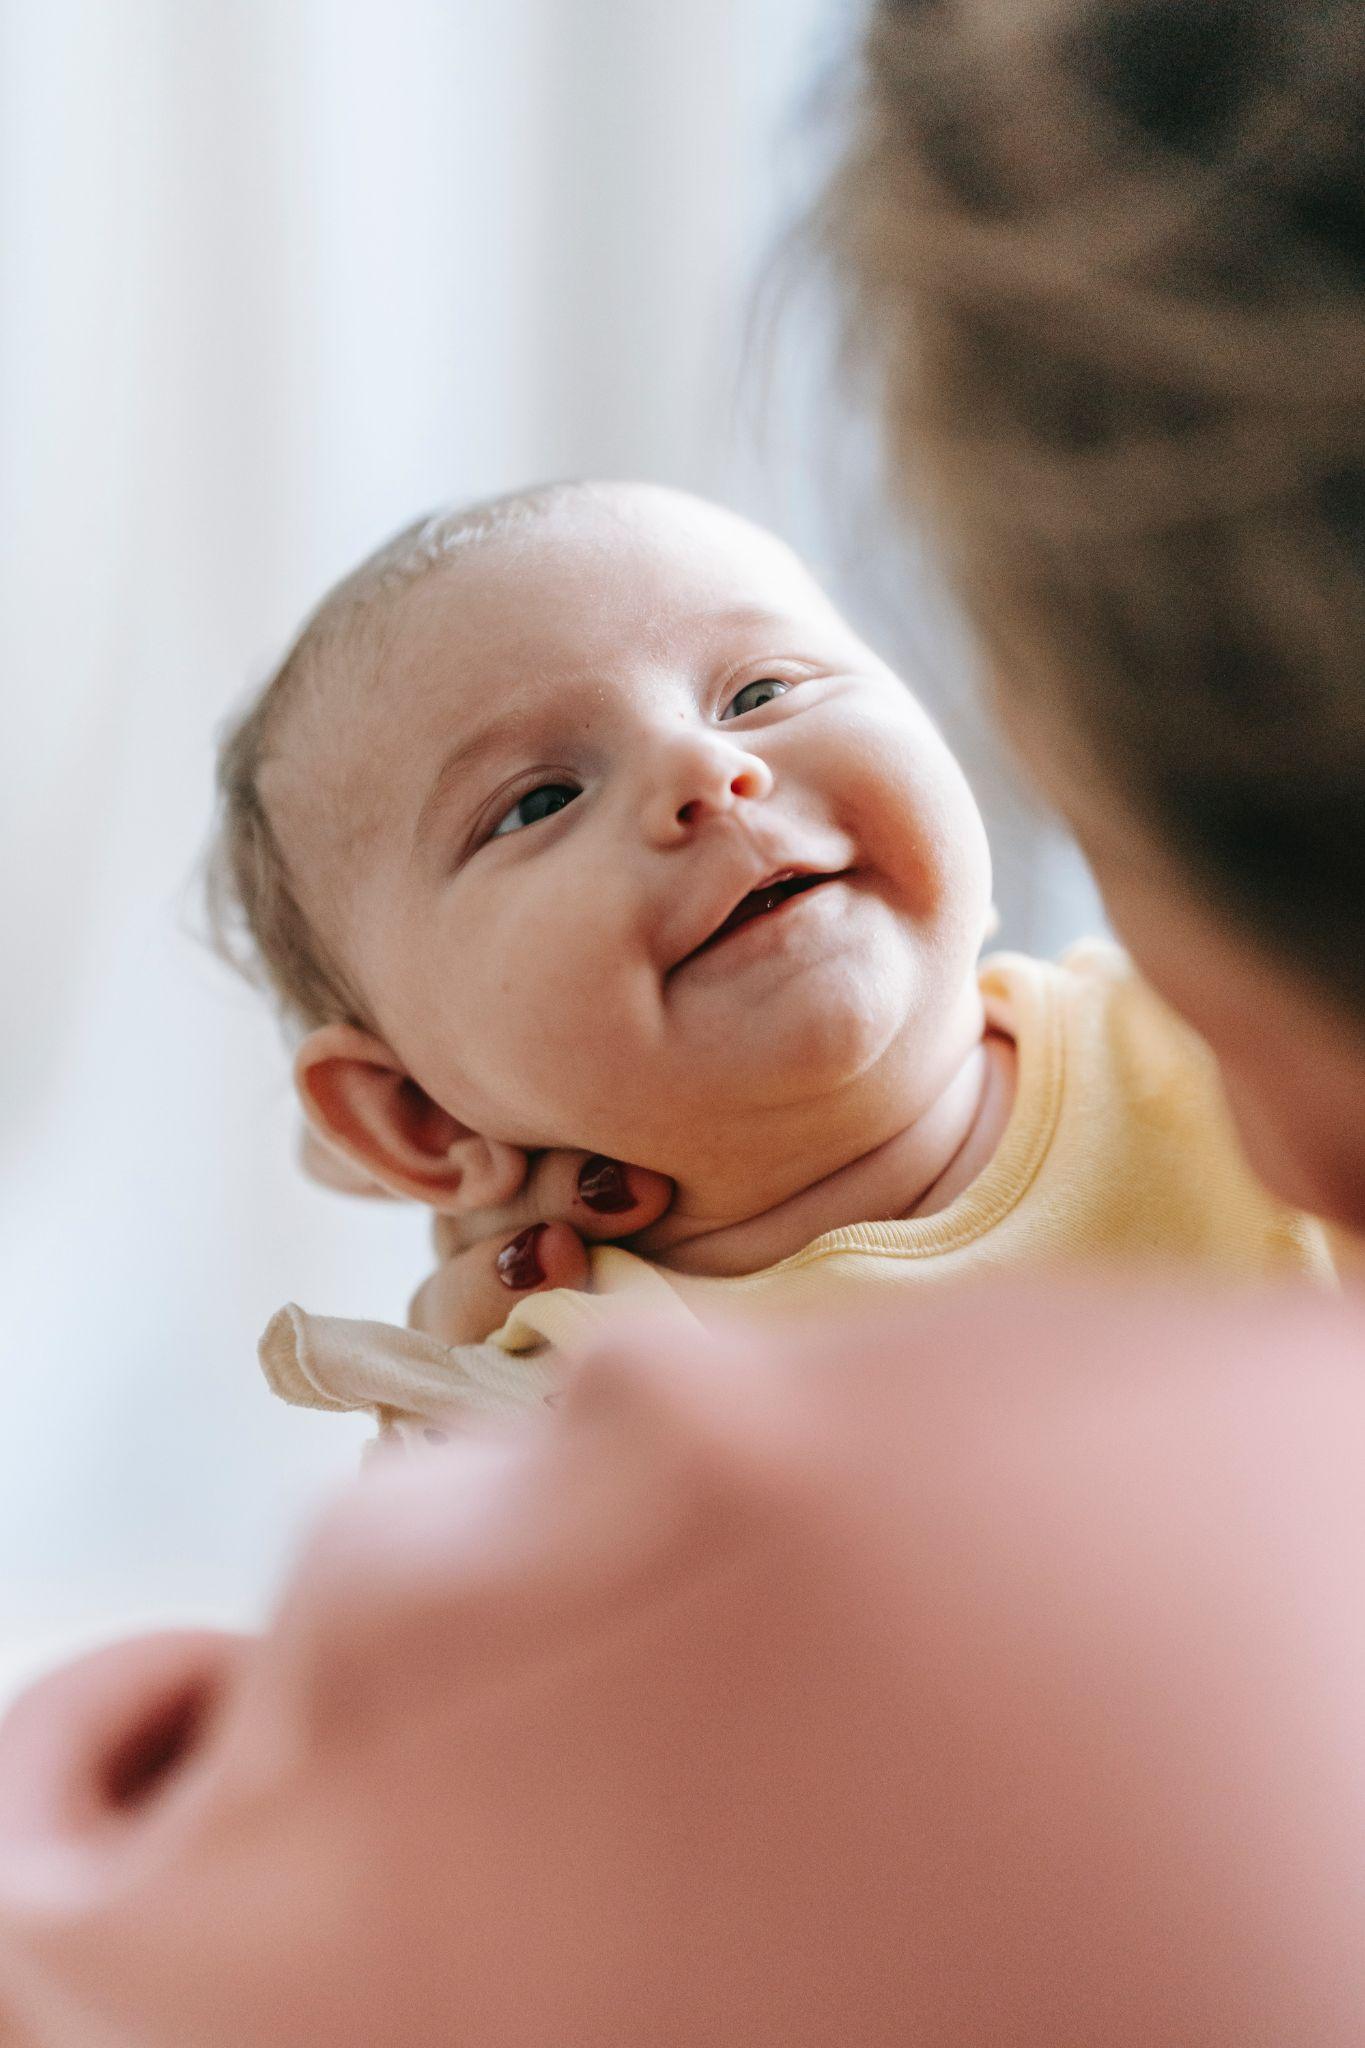 Baby smiling photo - Newborn Photoshoot - Baby Journey